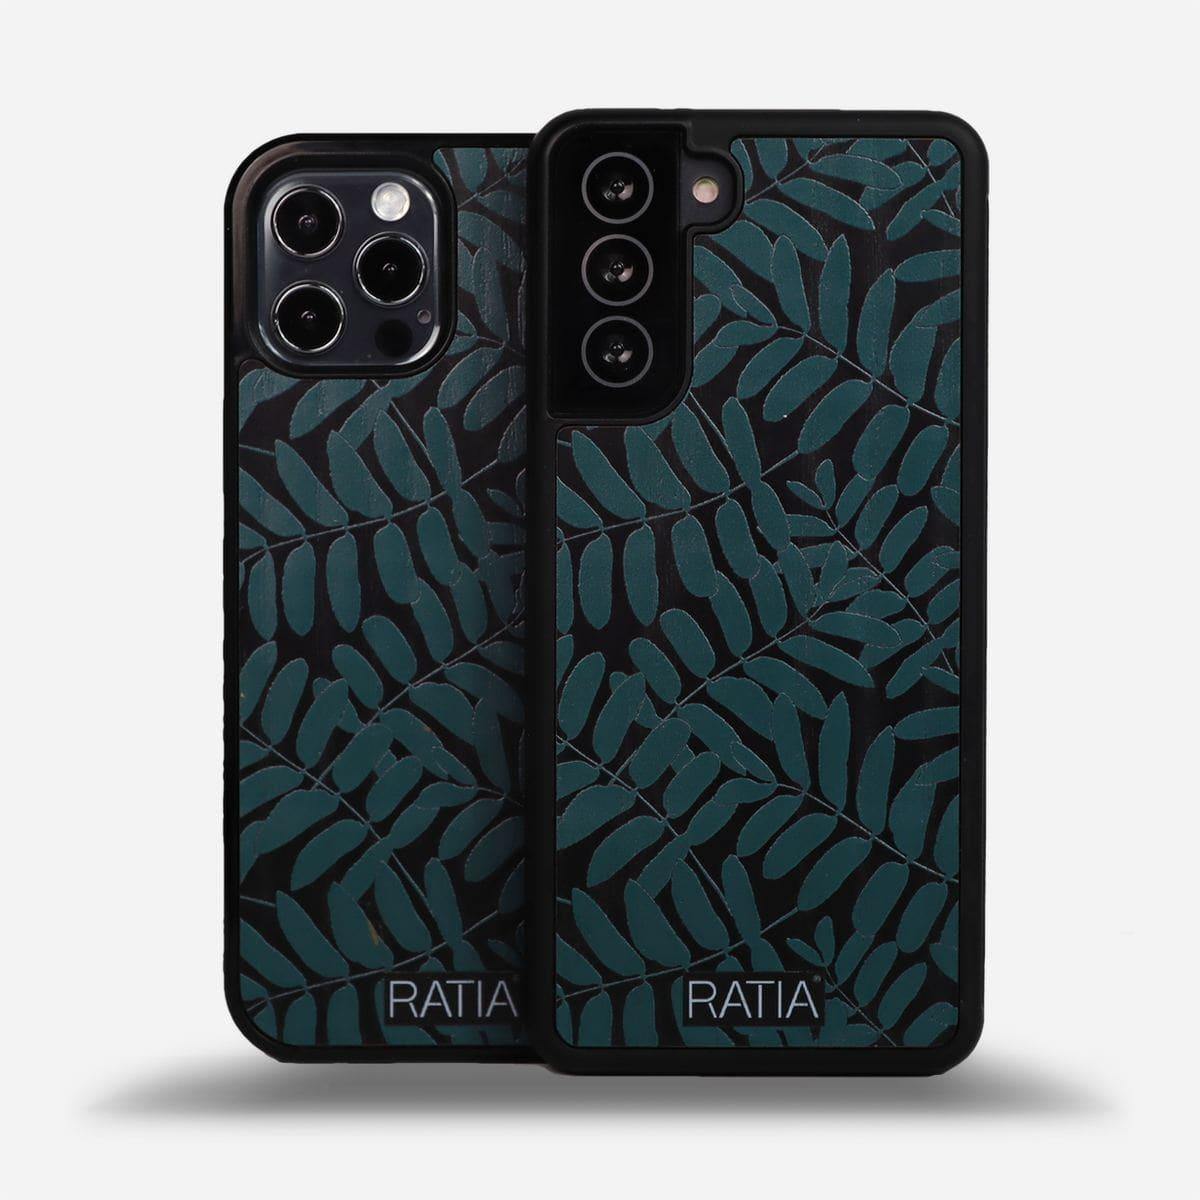 LASTU x RATIA - Pihlaja - Lastu - Nordic Wooden Phone Cases - Ratia Cases - Design Collection, Ratia